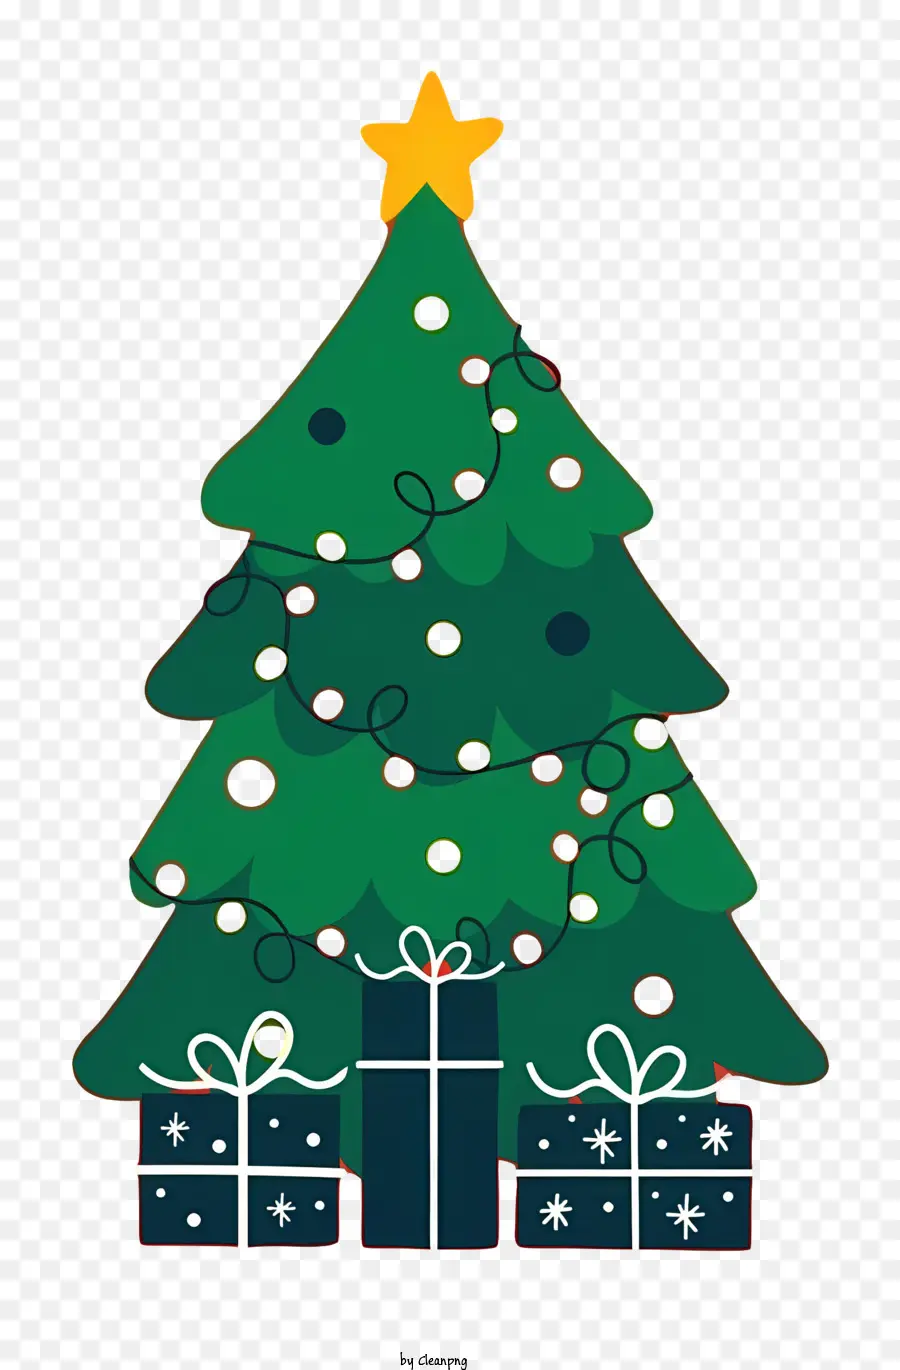 Weihnachtsbaum - Grüner Weihnachtsbaum mit Stern und Geschenken